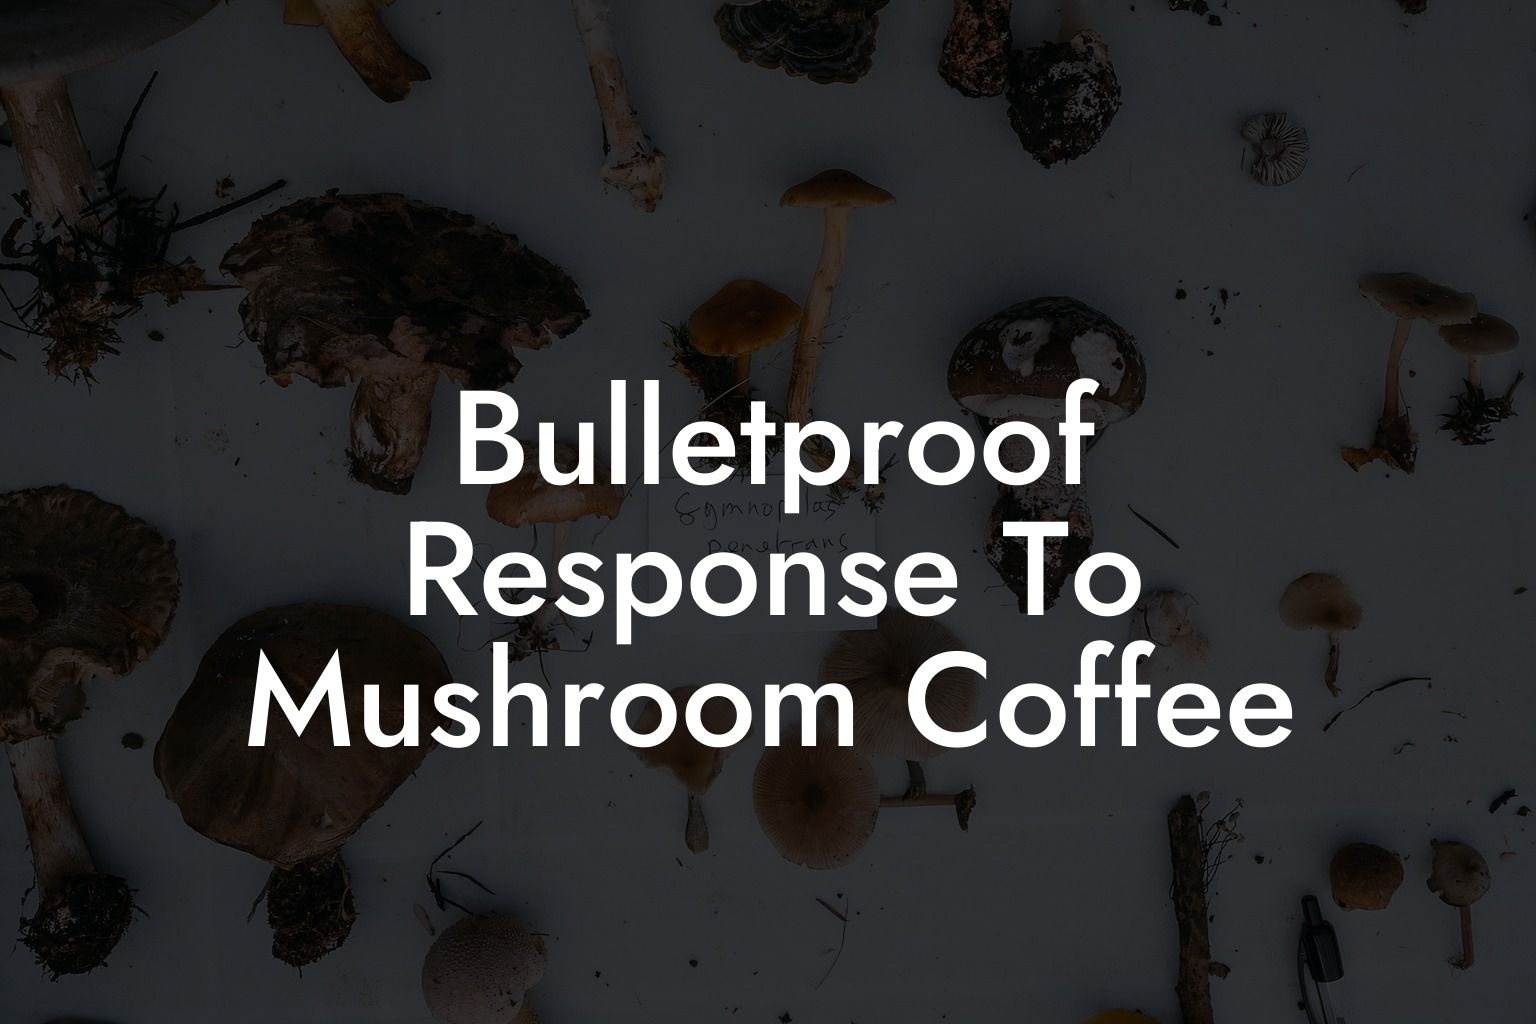 Bulletproof Response To Mushroom Coffee